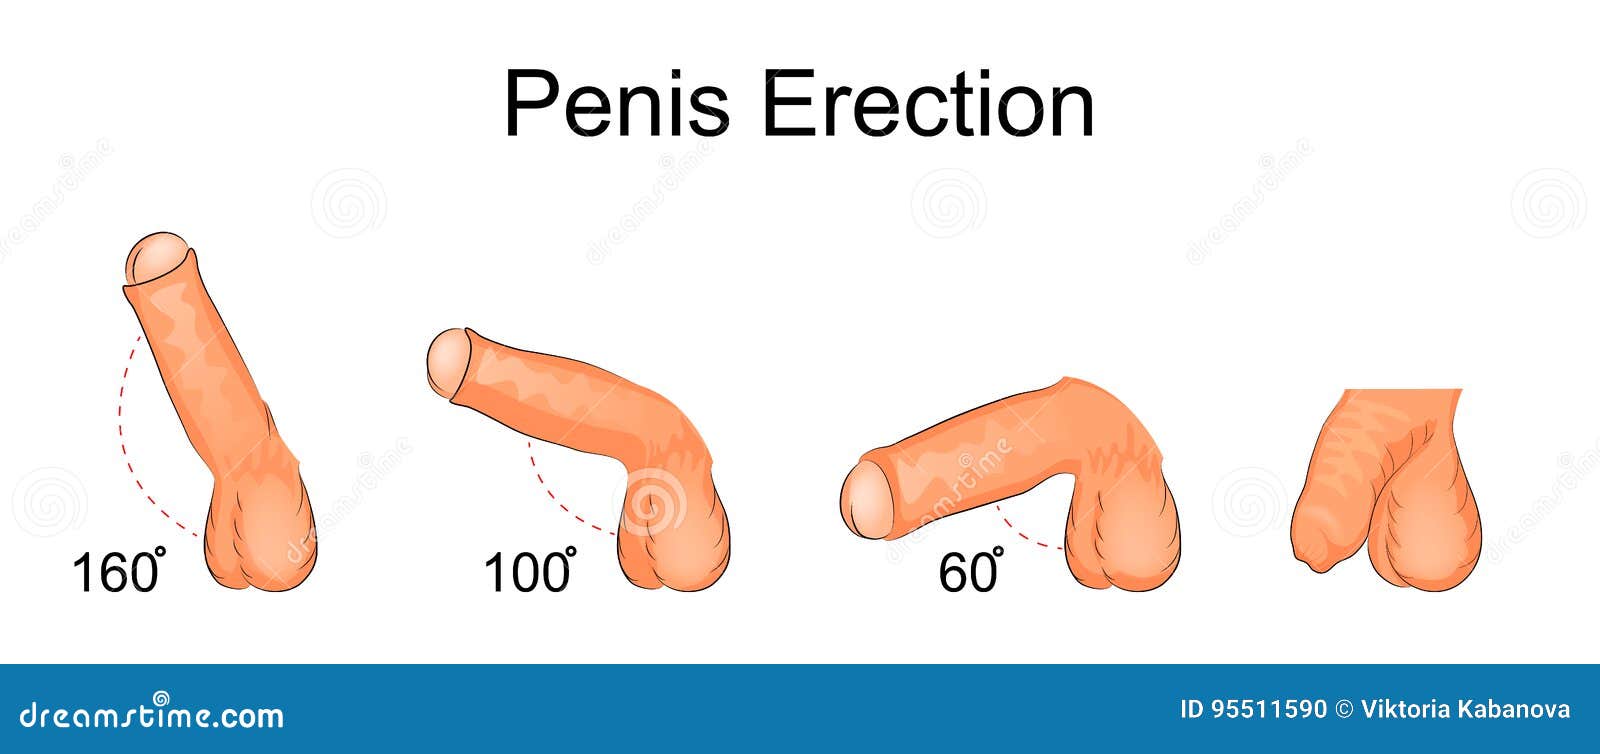 penis jest skręcony z erekcją)